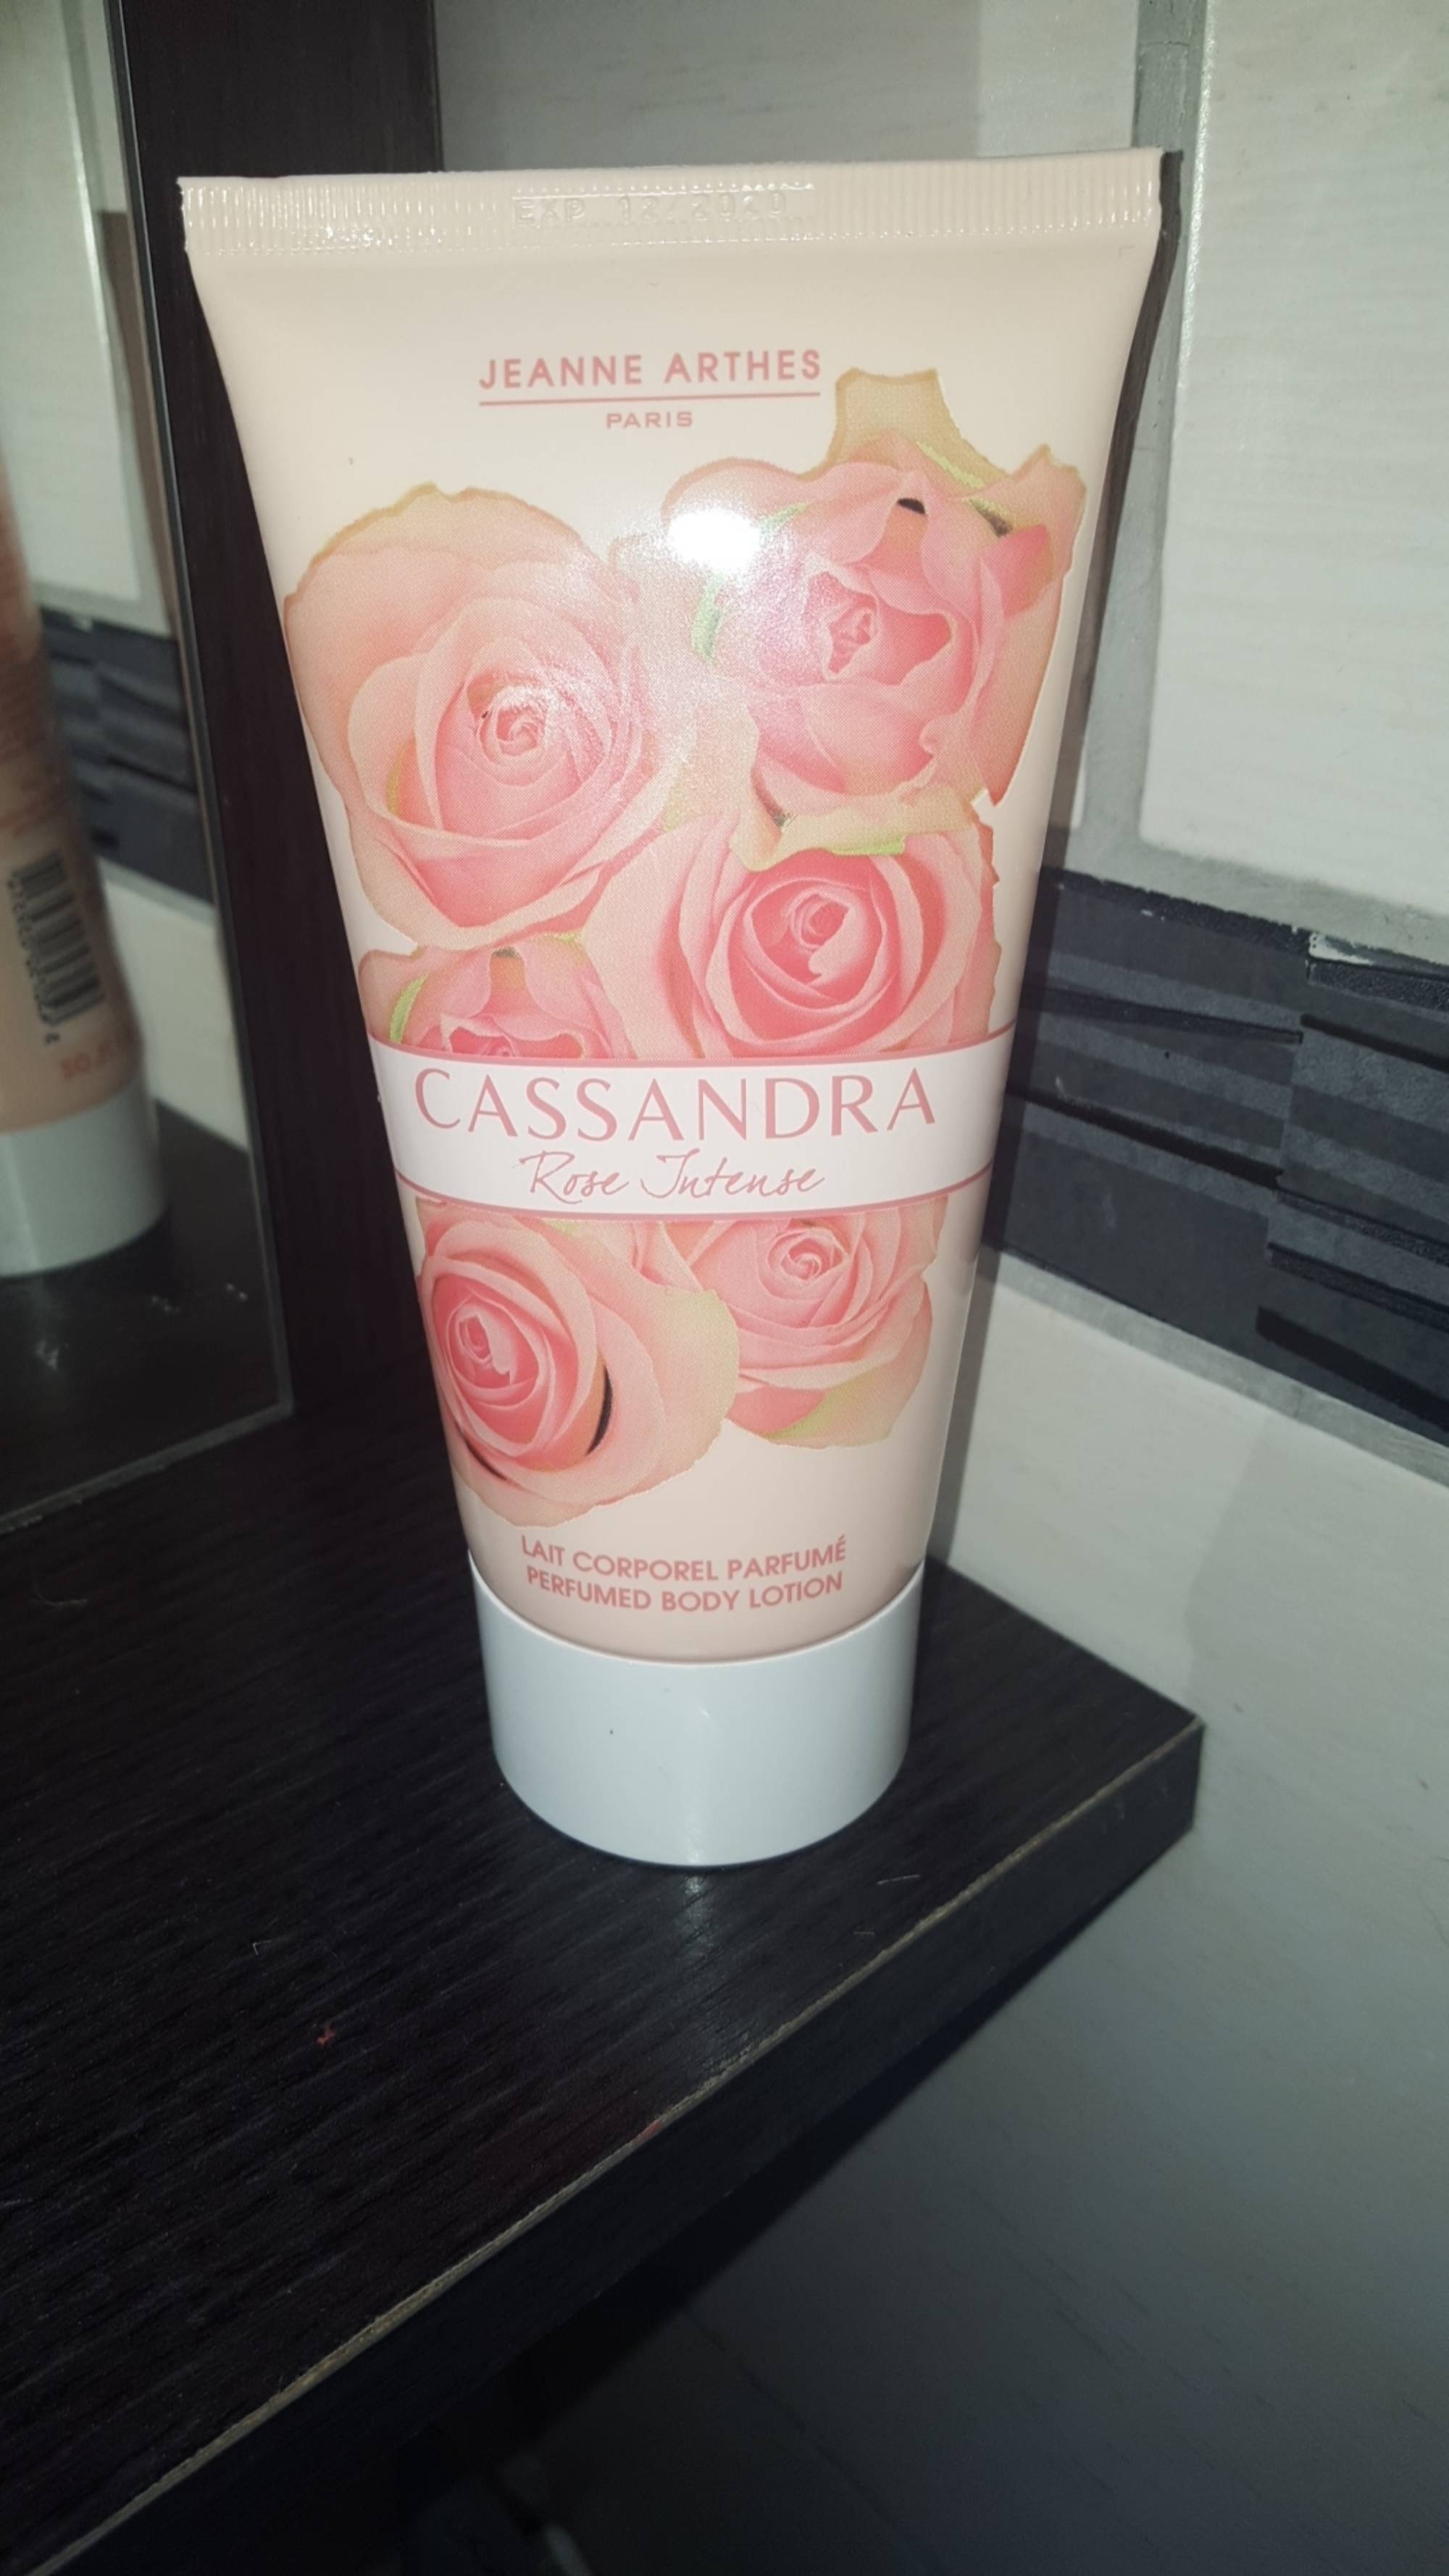 JEANNE ARTHES - Cassandra rose intense - Lait corporel parfumé